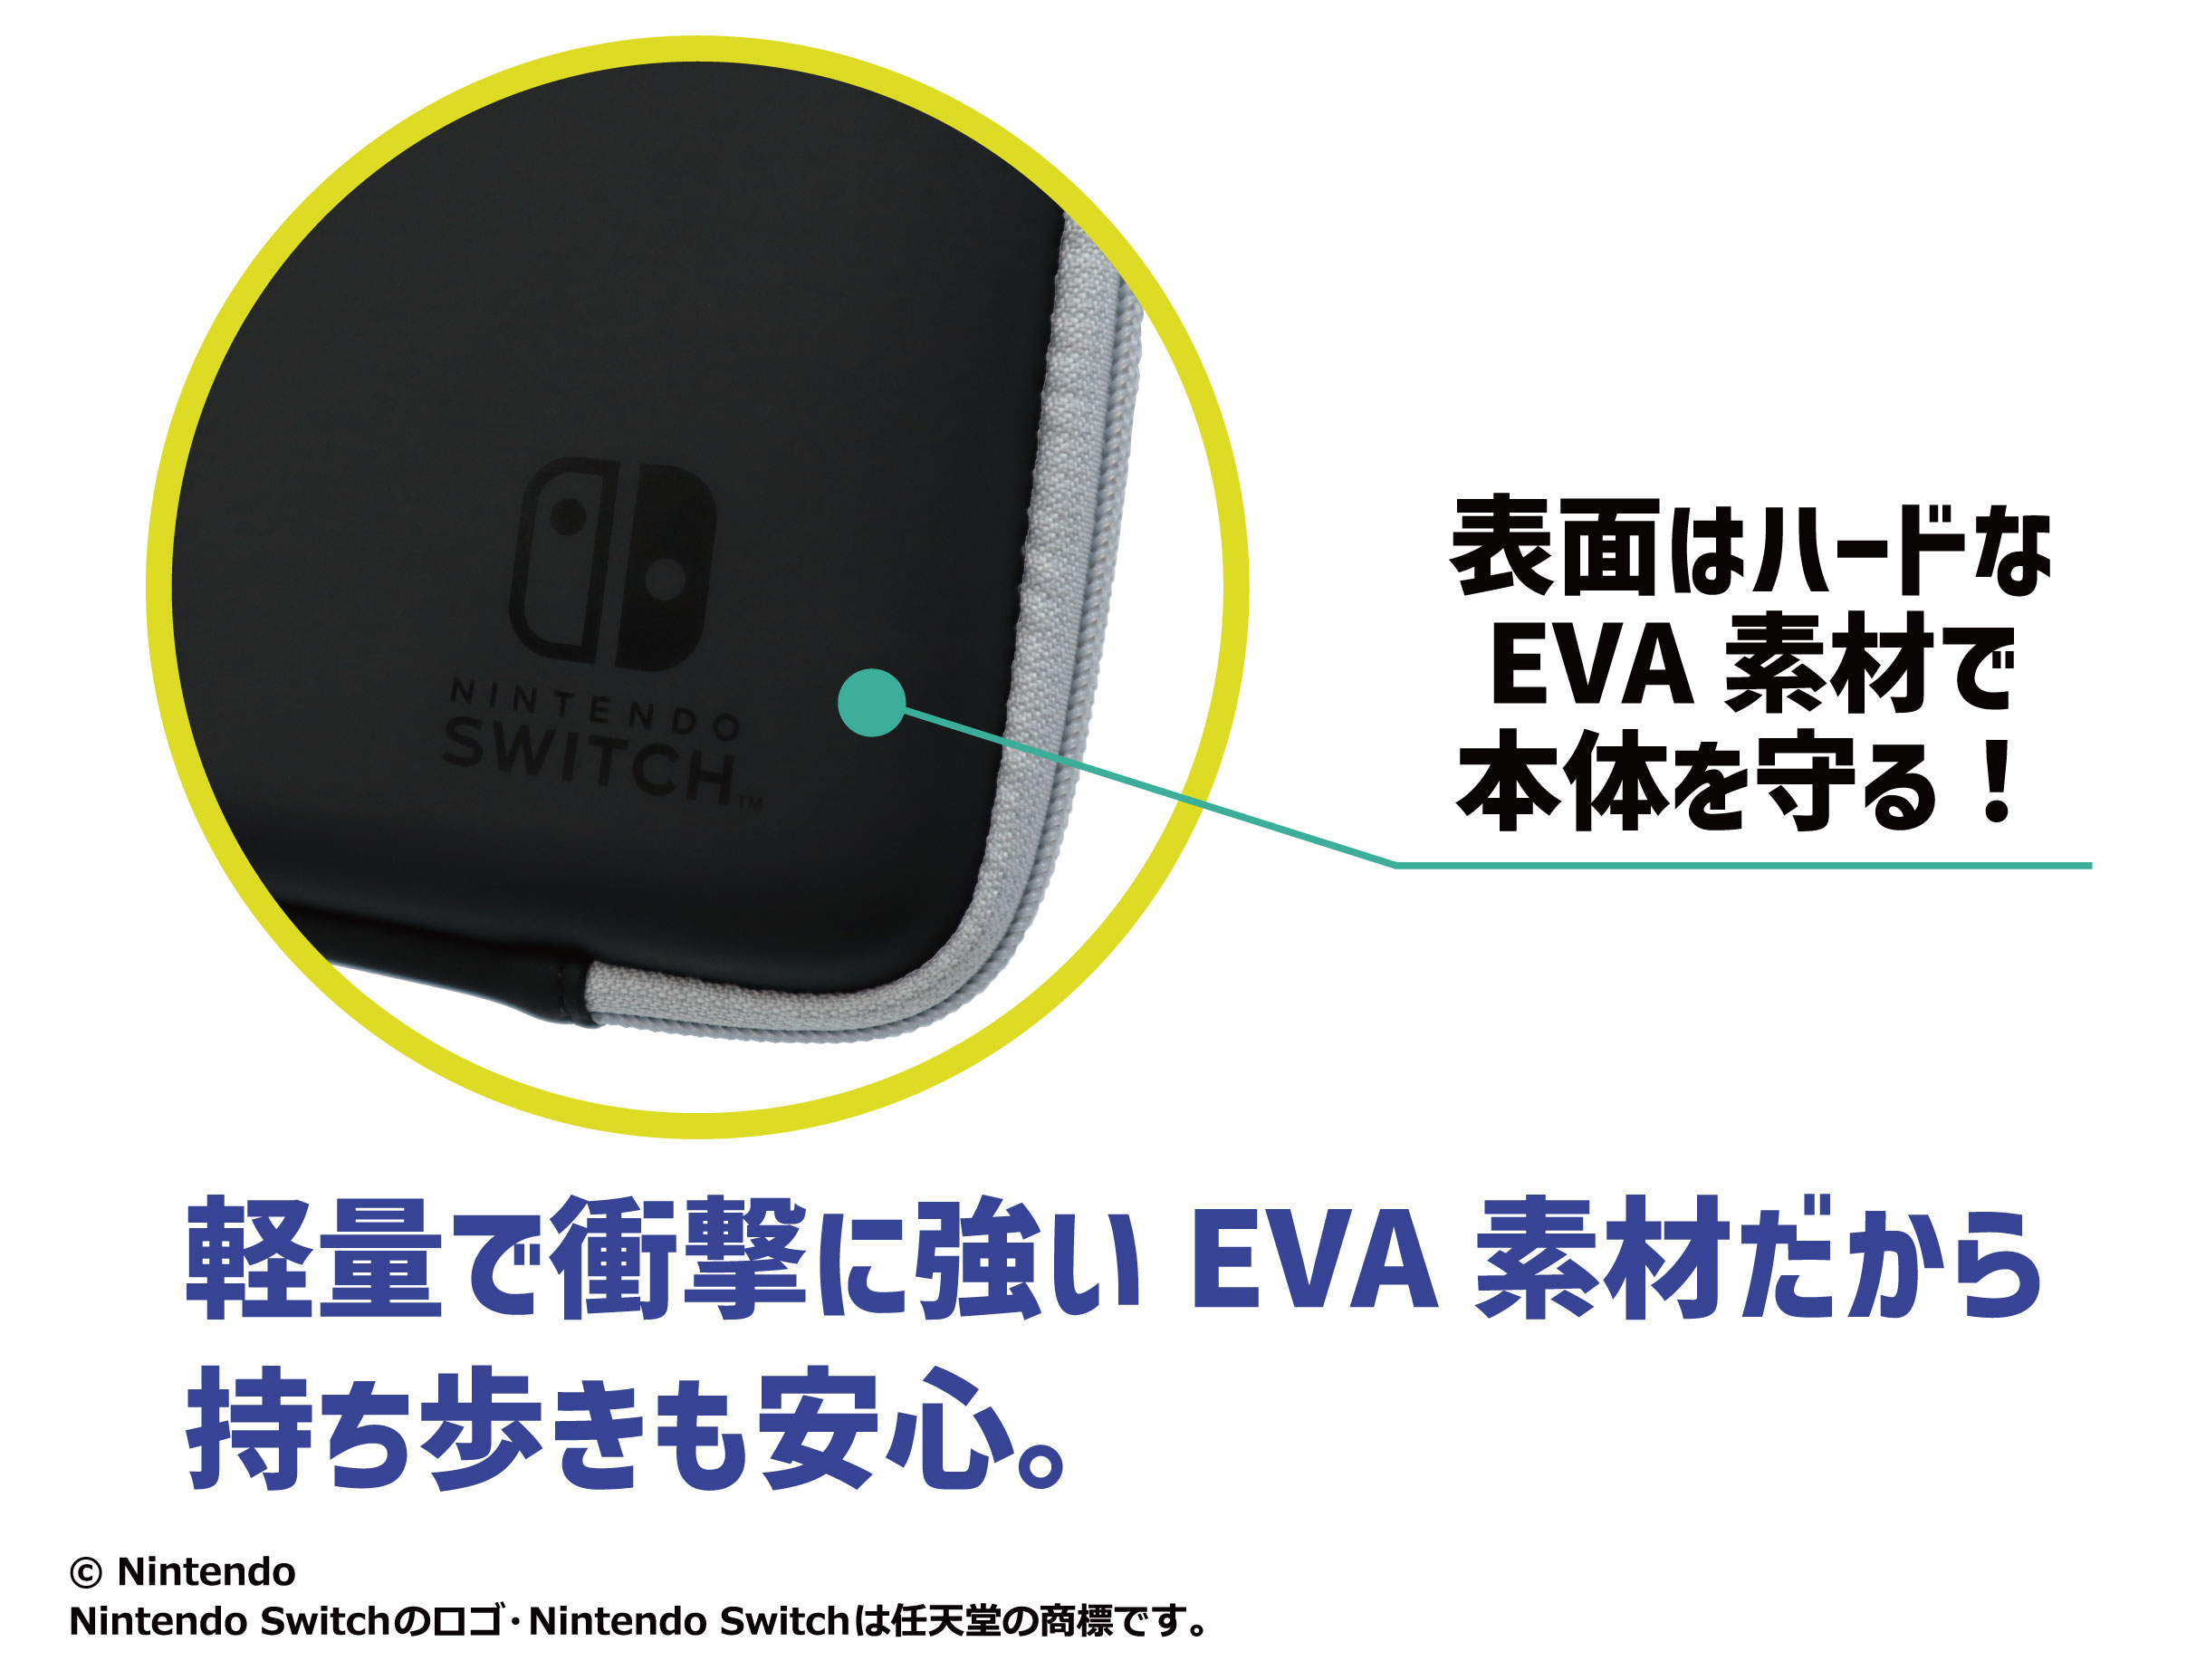 Nintendo Switch (有機ELモデル)に対応したアクセサリーがマックス 